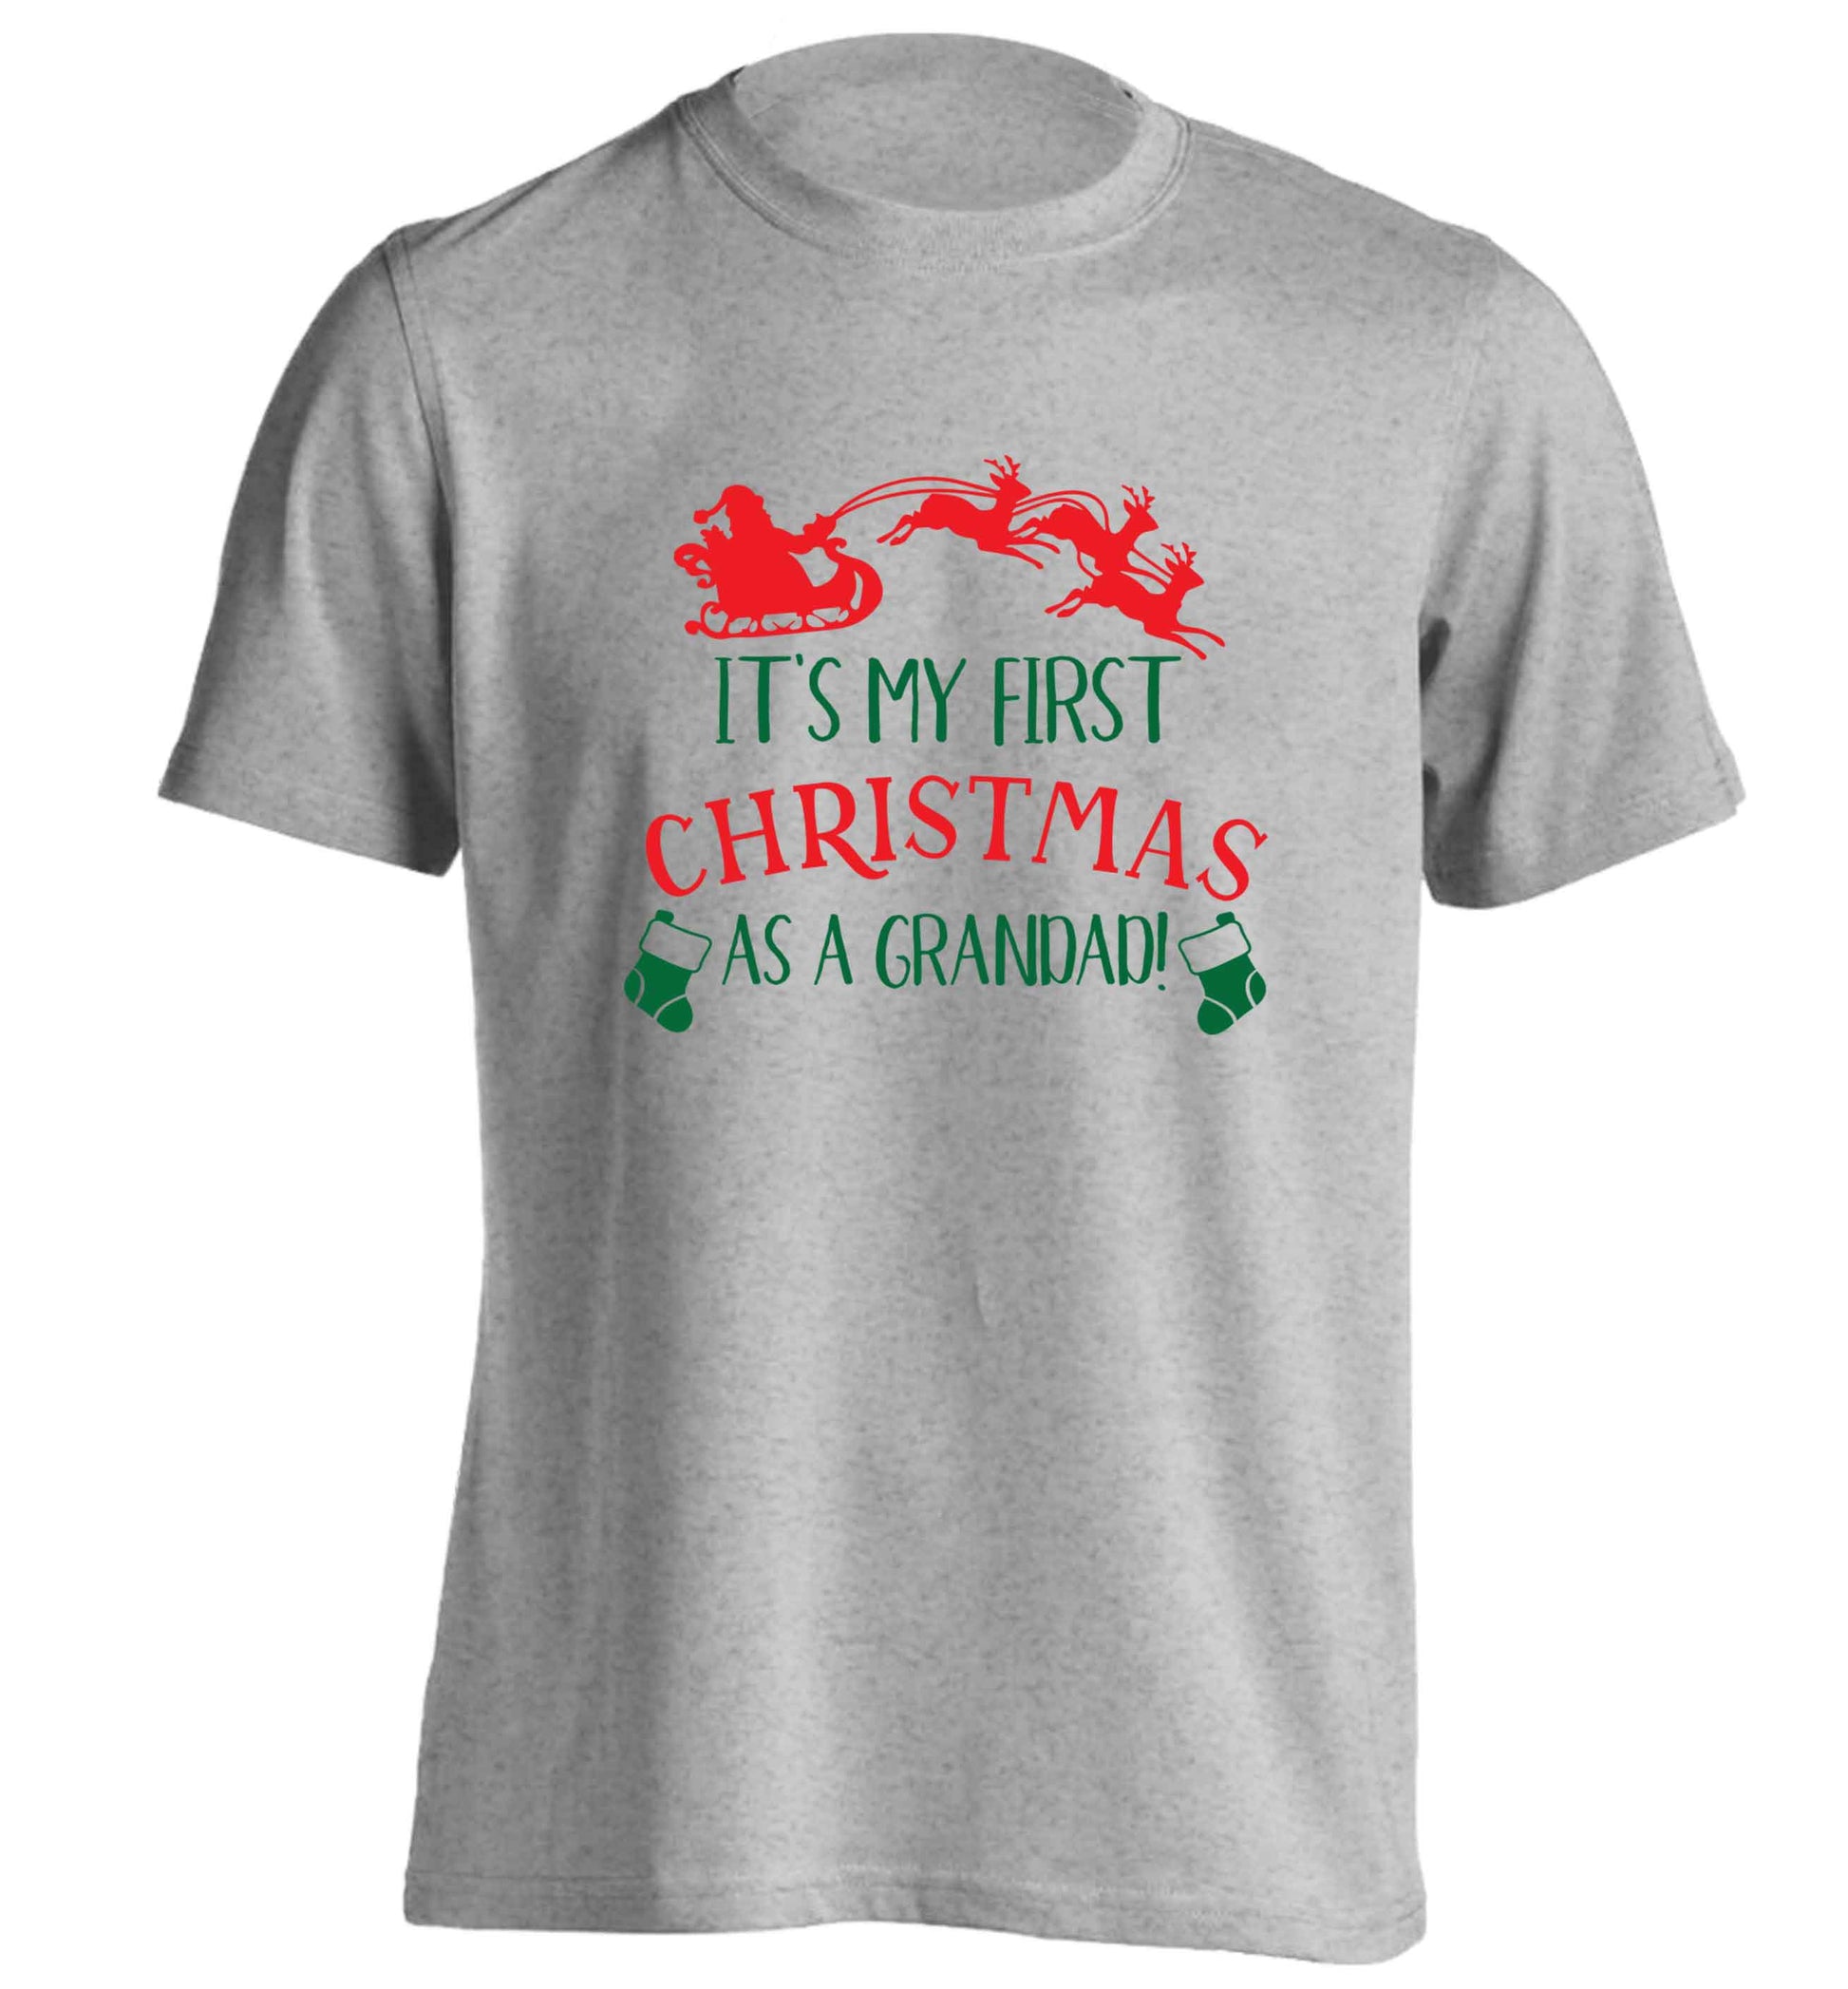 It's my first Christmas as a grandad! adults unisex grey Tshirt 2XL